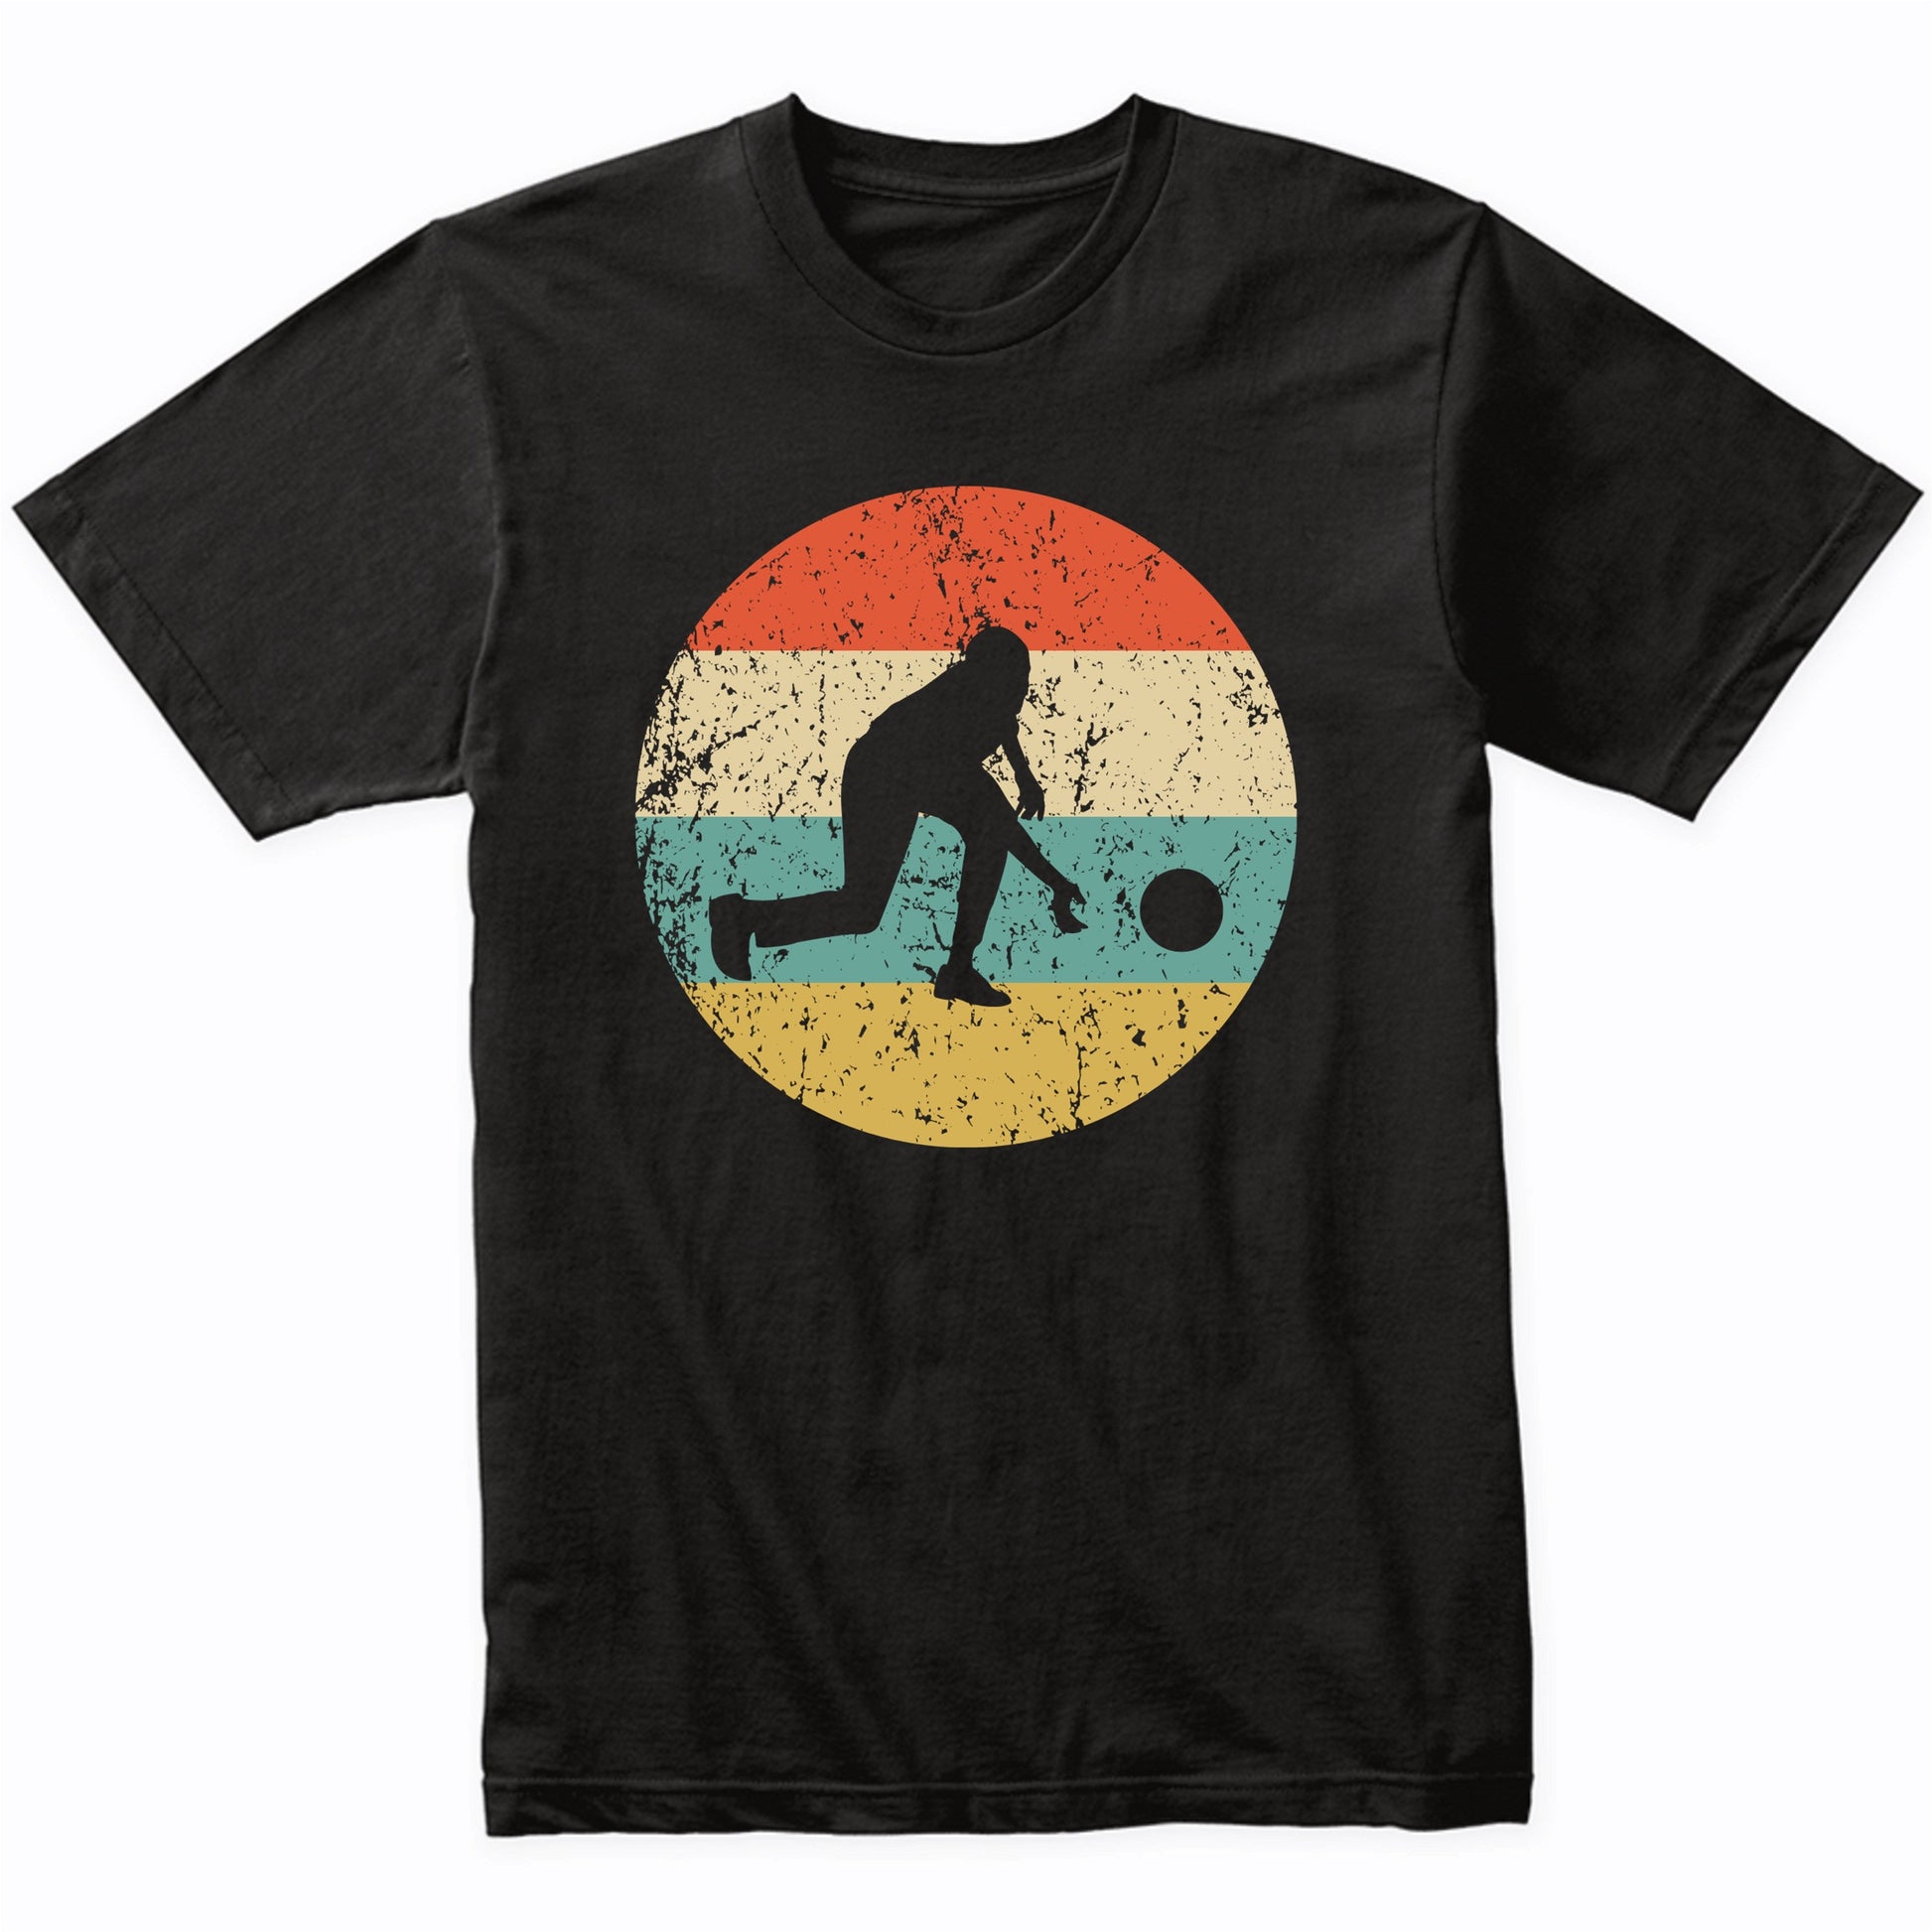 Bowling Shirt - Vintage Retro Bowler T-Shirt